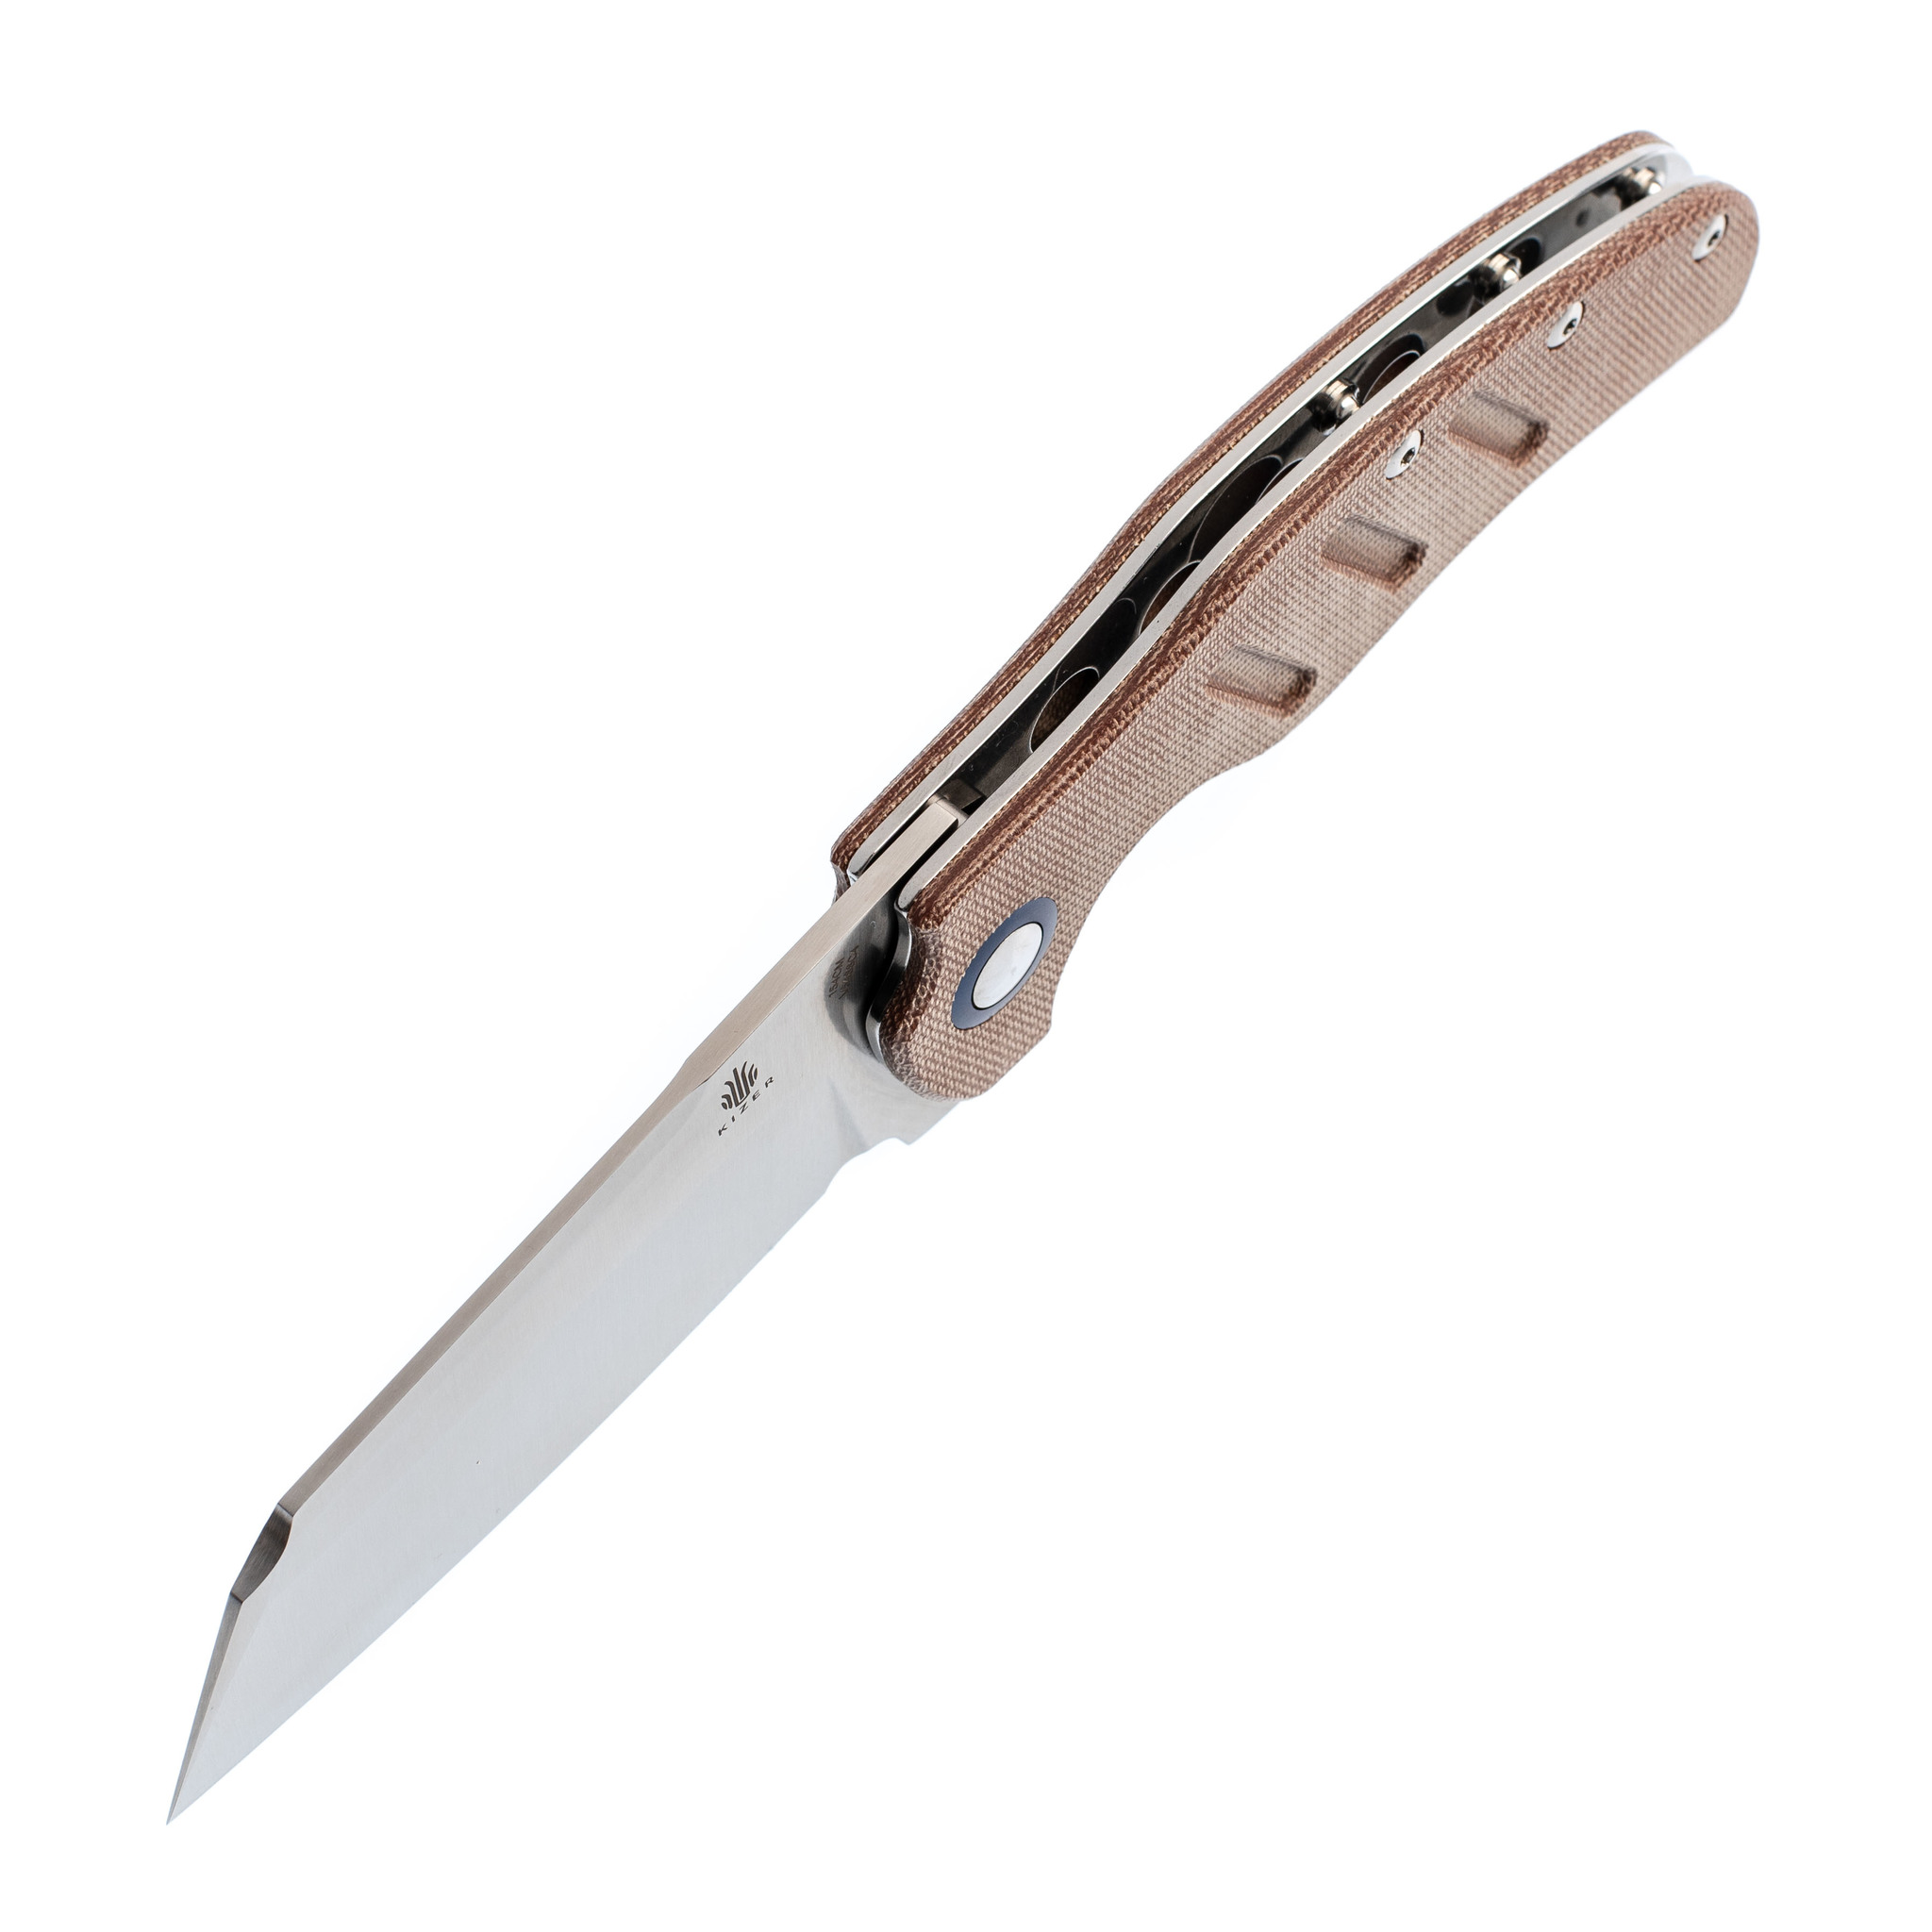 Складной нож Kizer C01C XL, сталь 154CM, рукоять Brown Micarta от Ножиков